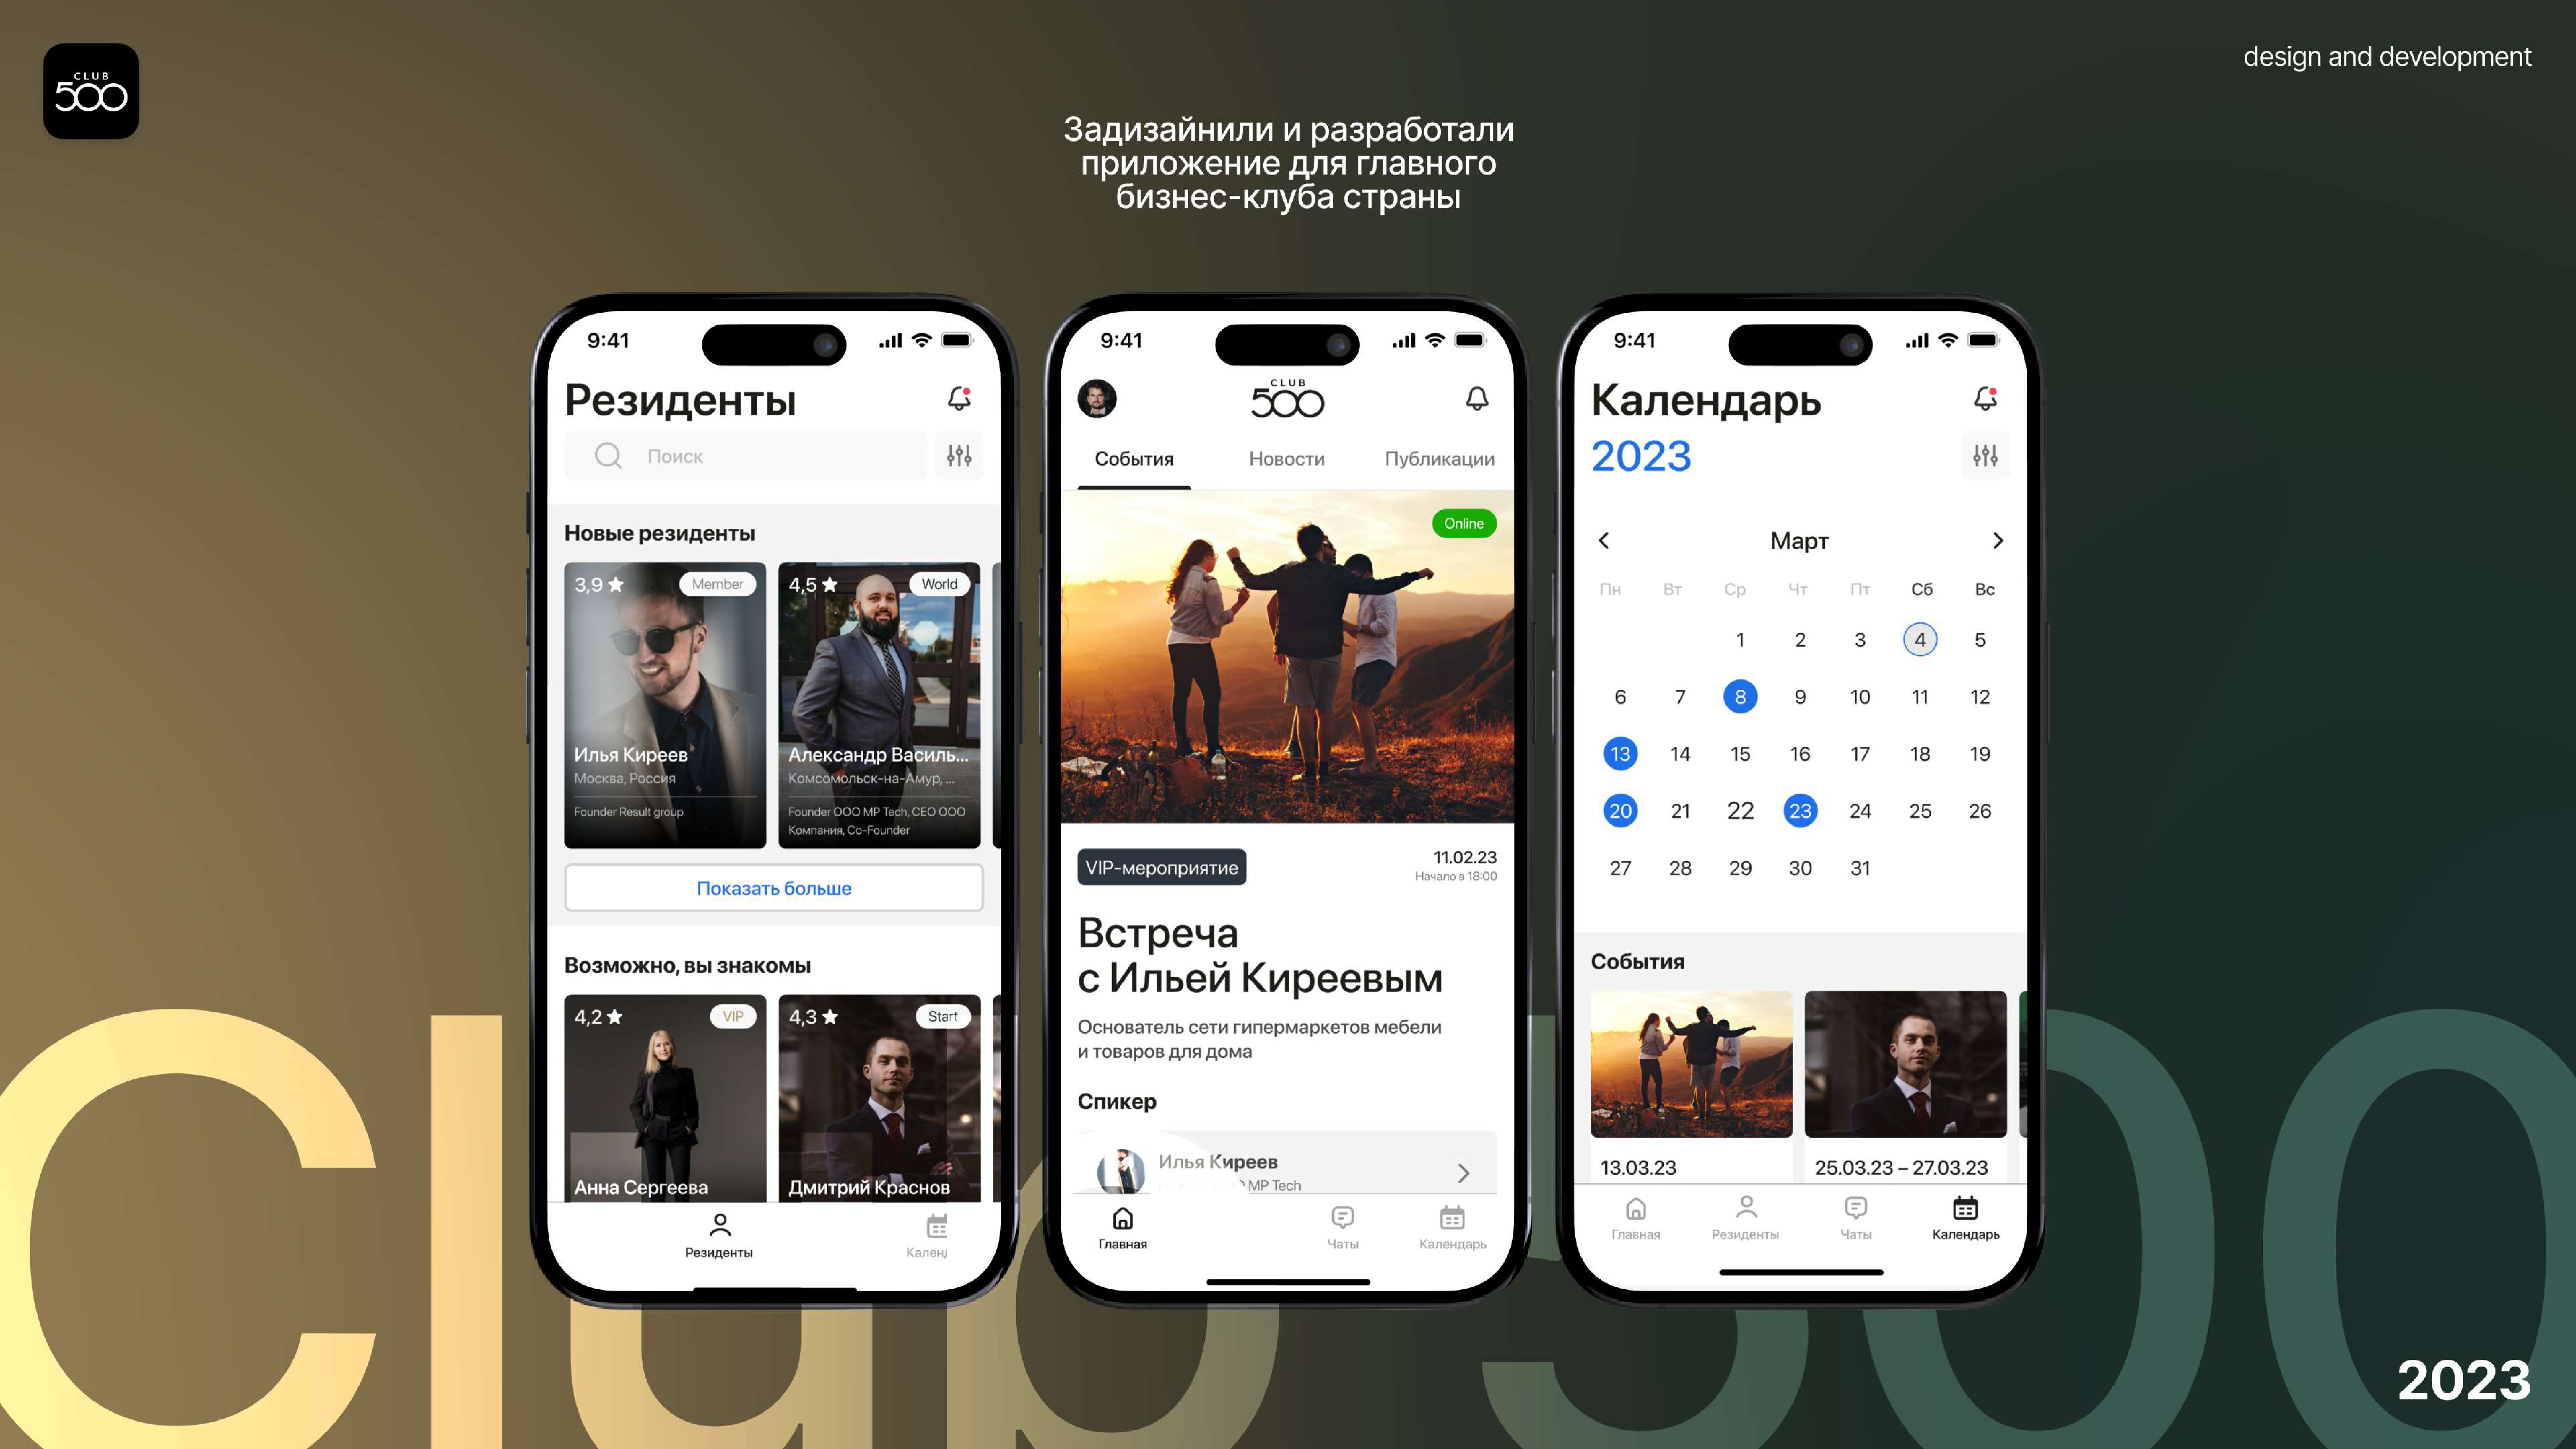 Мобильное приложение для Club 500 - удобная платформа для общения членов клуба 